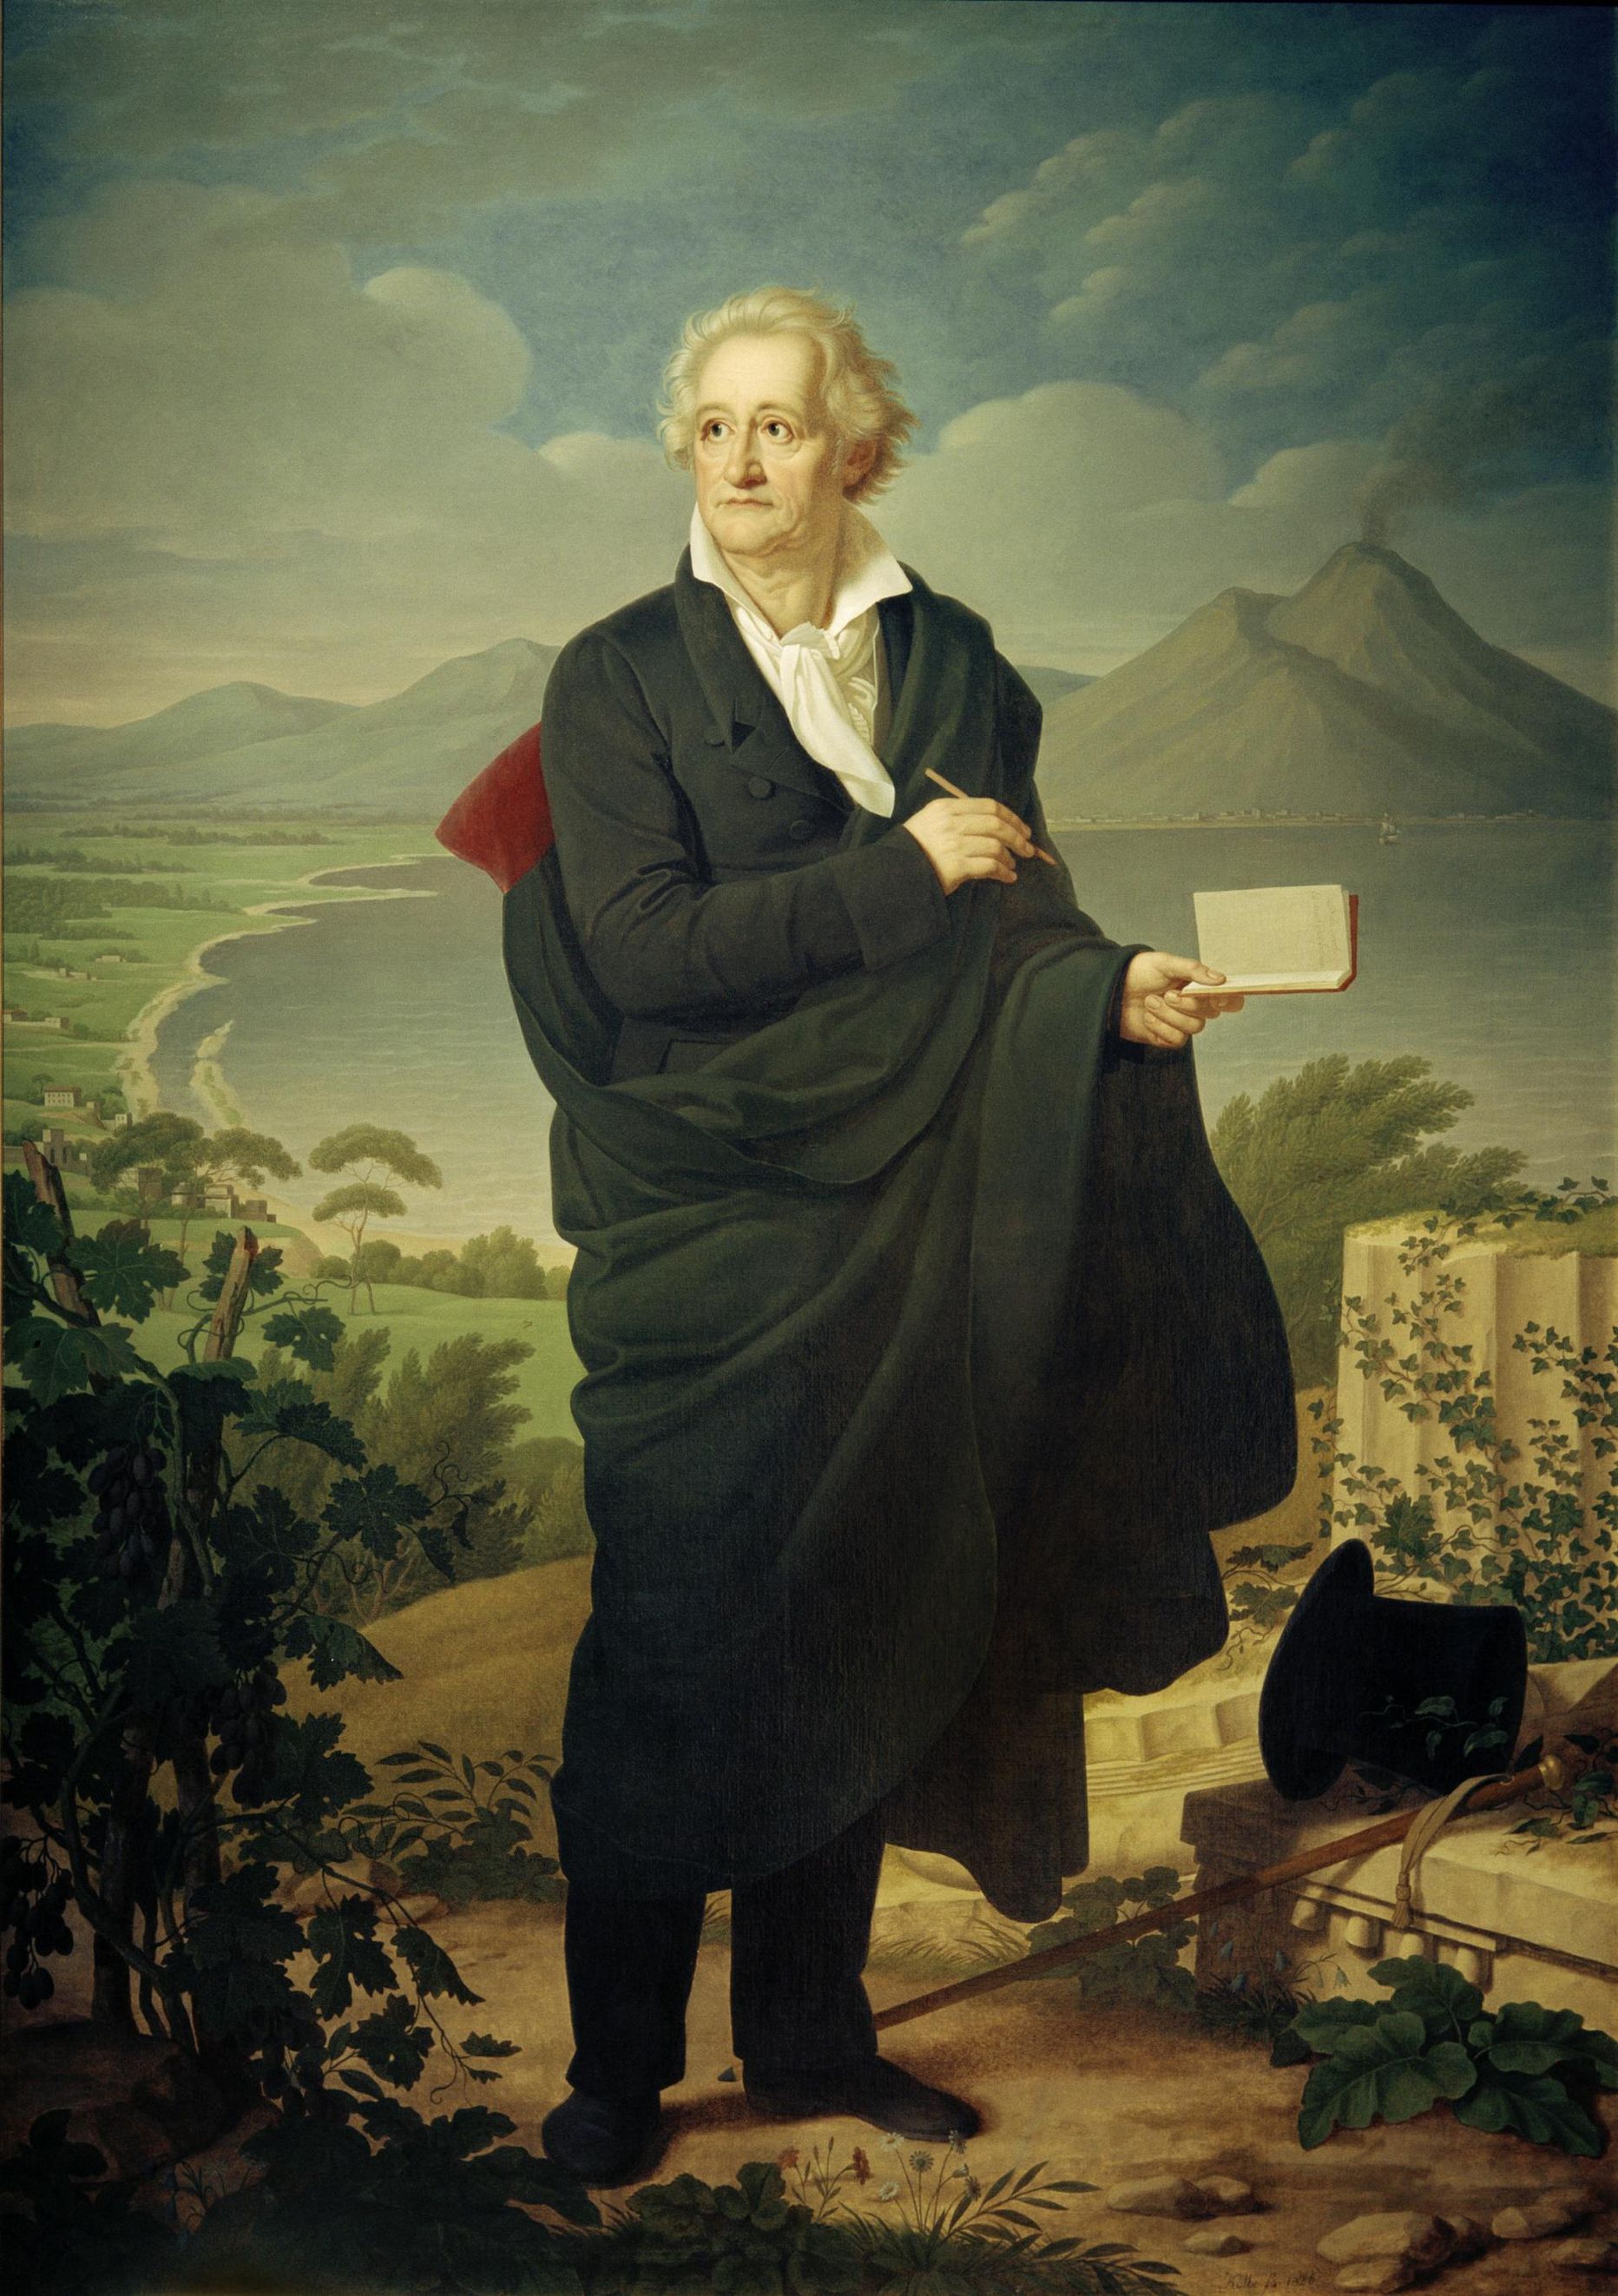 H. C. Kolbe (1771–1836) on õlimaalil aastast 1826 kujutanud Goethet Vesuuvi juures.